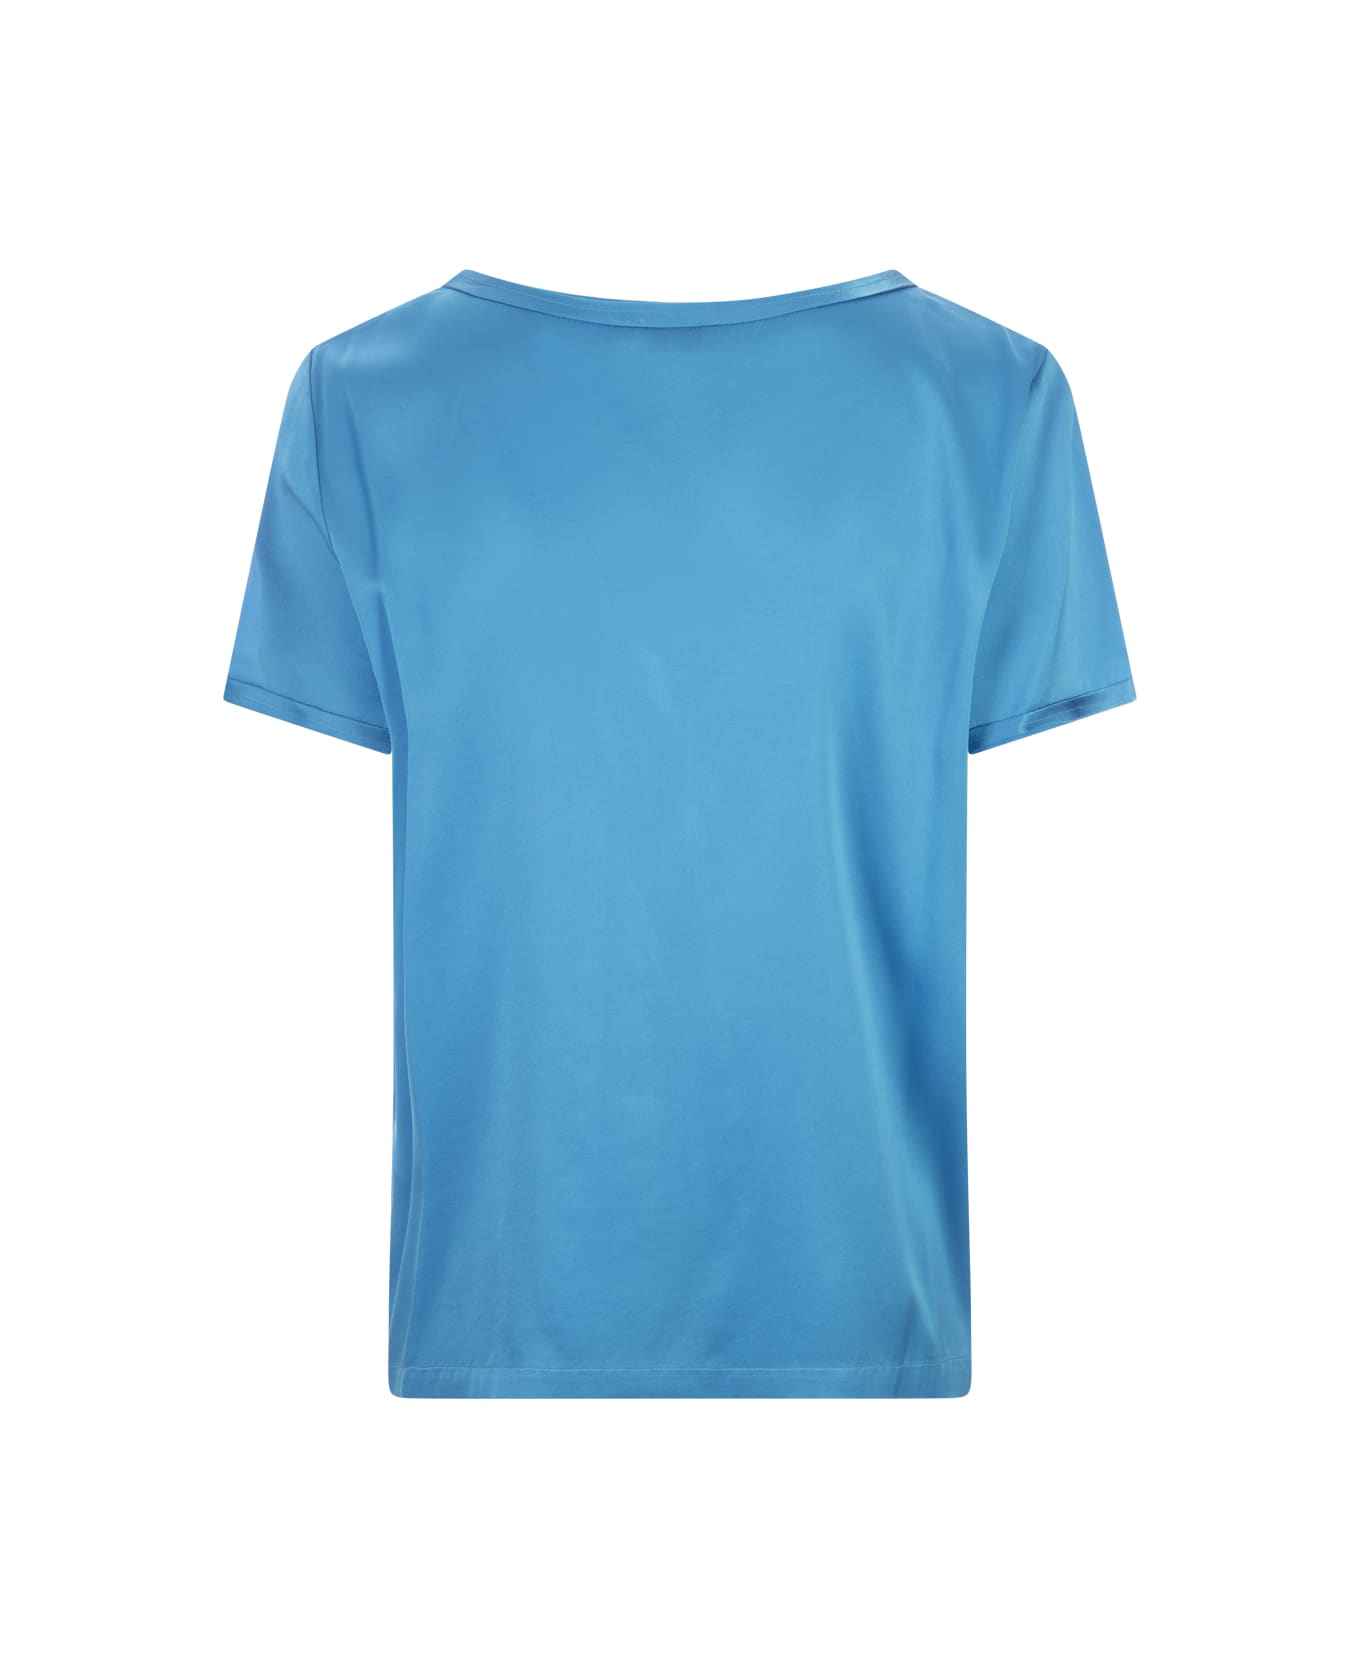 Her Shirt Blue Silk T-shirt - Blue